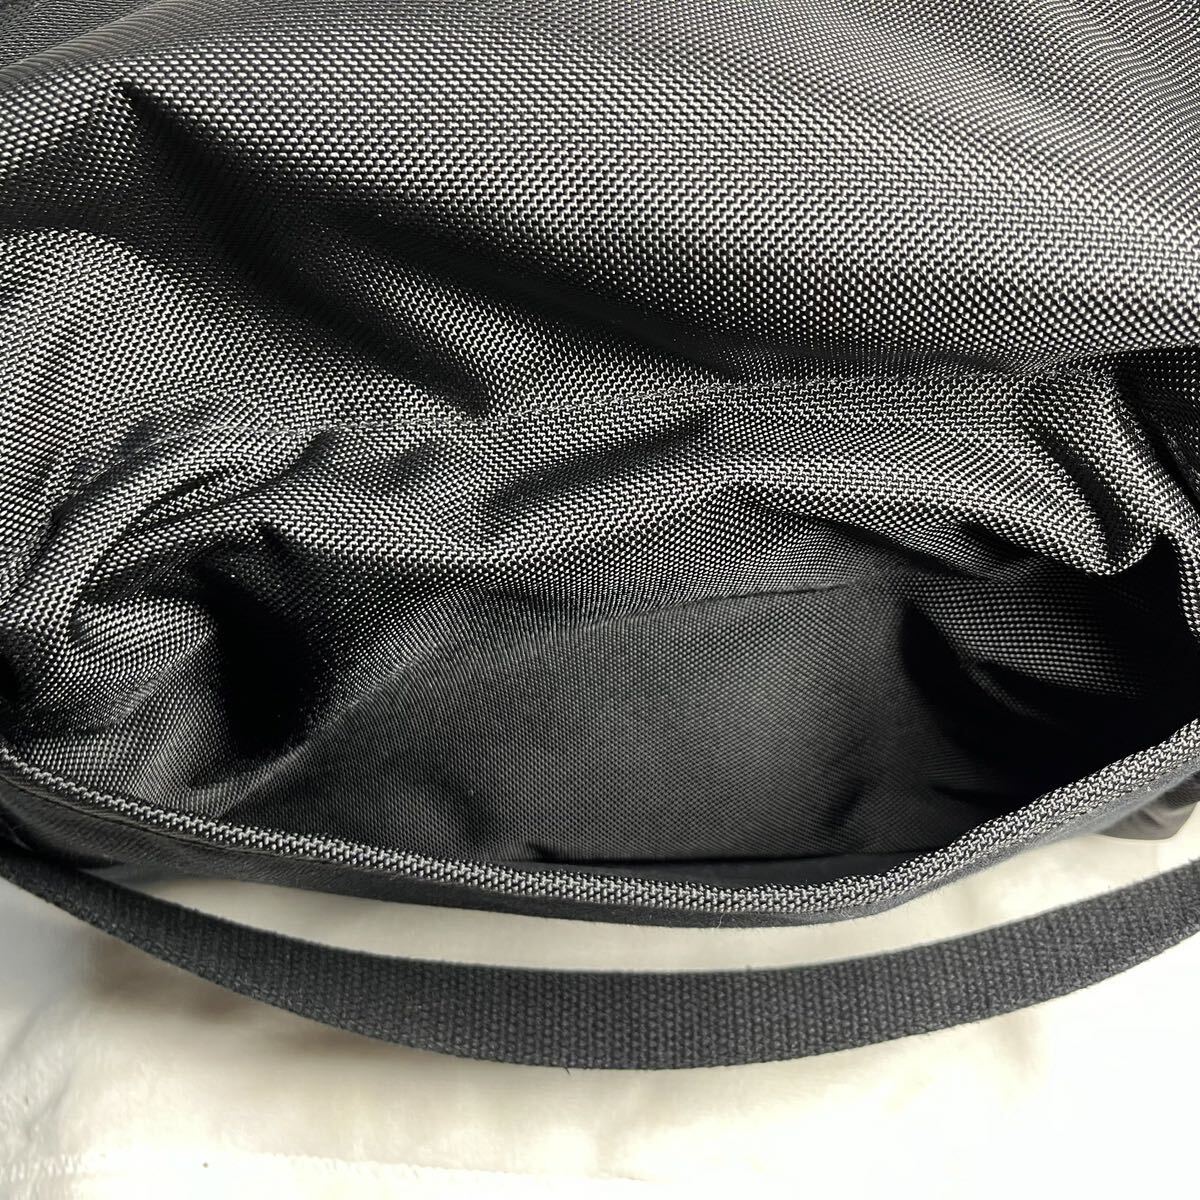 DOMKE( Don ke) F-2BB shoulder bag burr stick black 700-F2B camera bag 